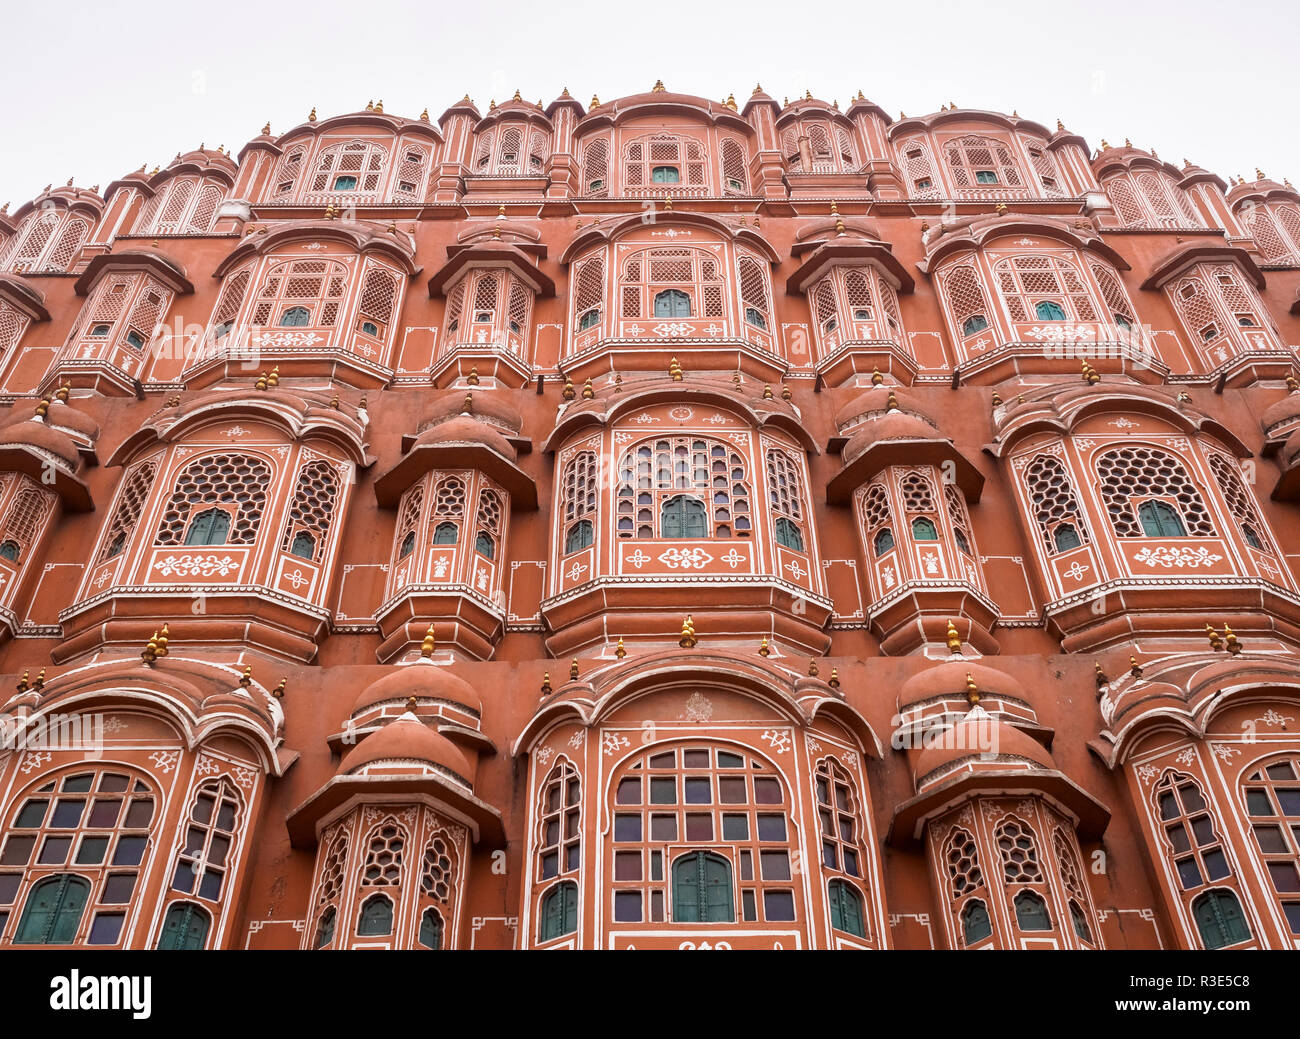 Hawa Mahal Palace in the city of Jaipur, Rajasthan, India Stock Photo